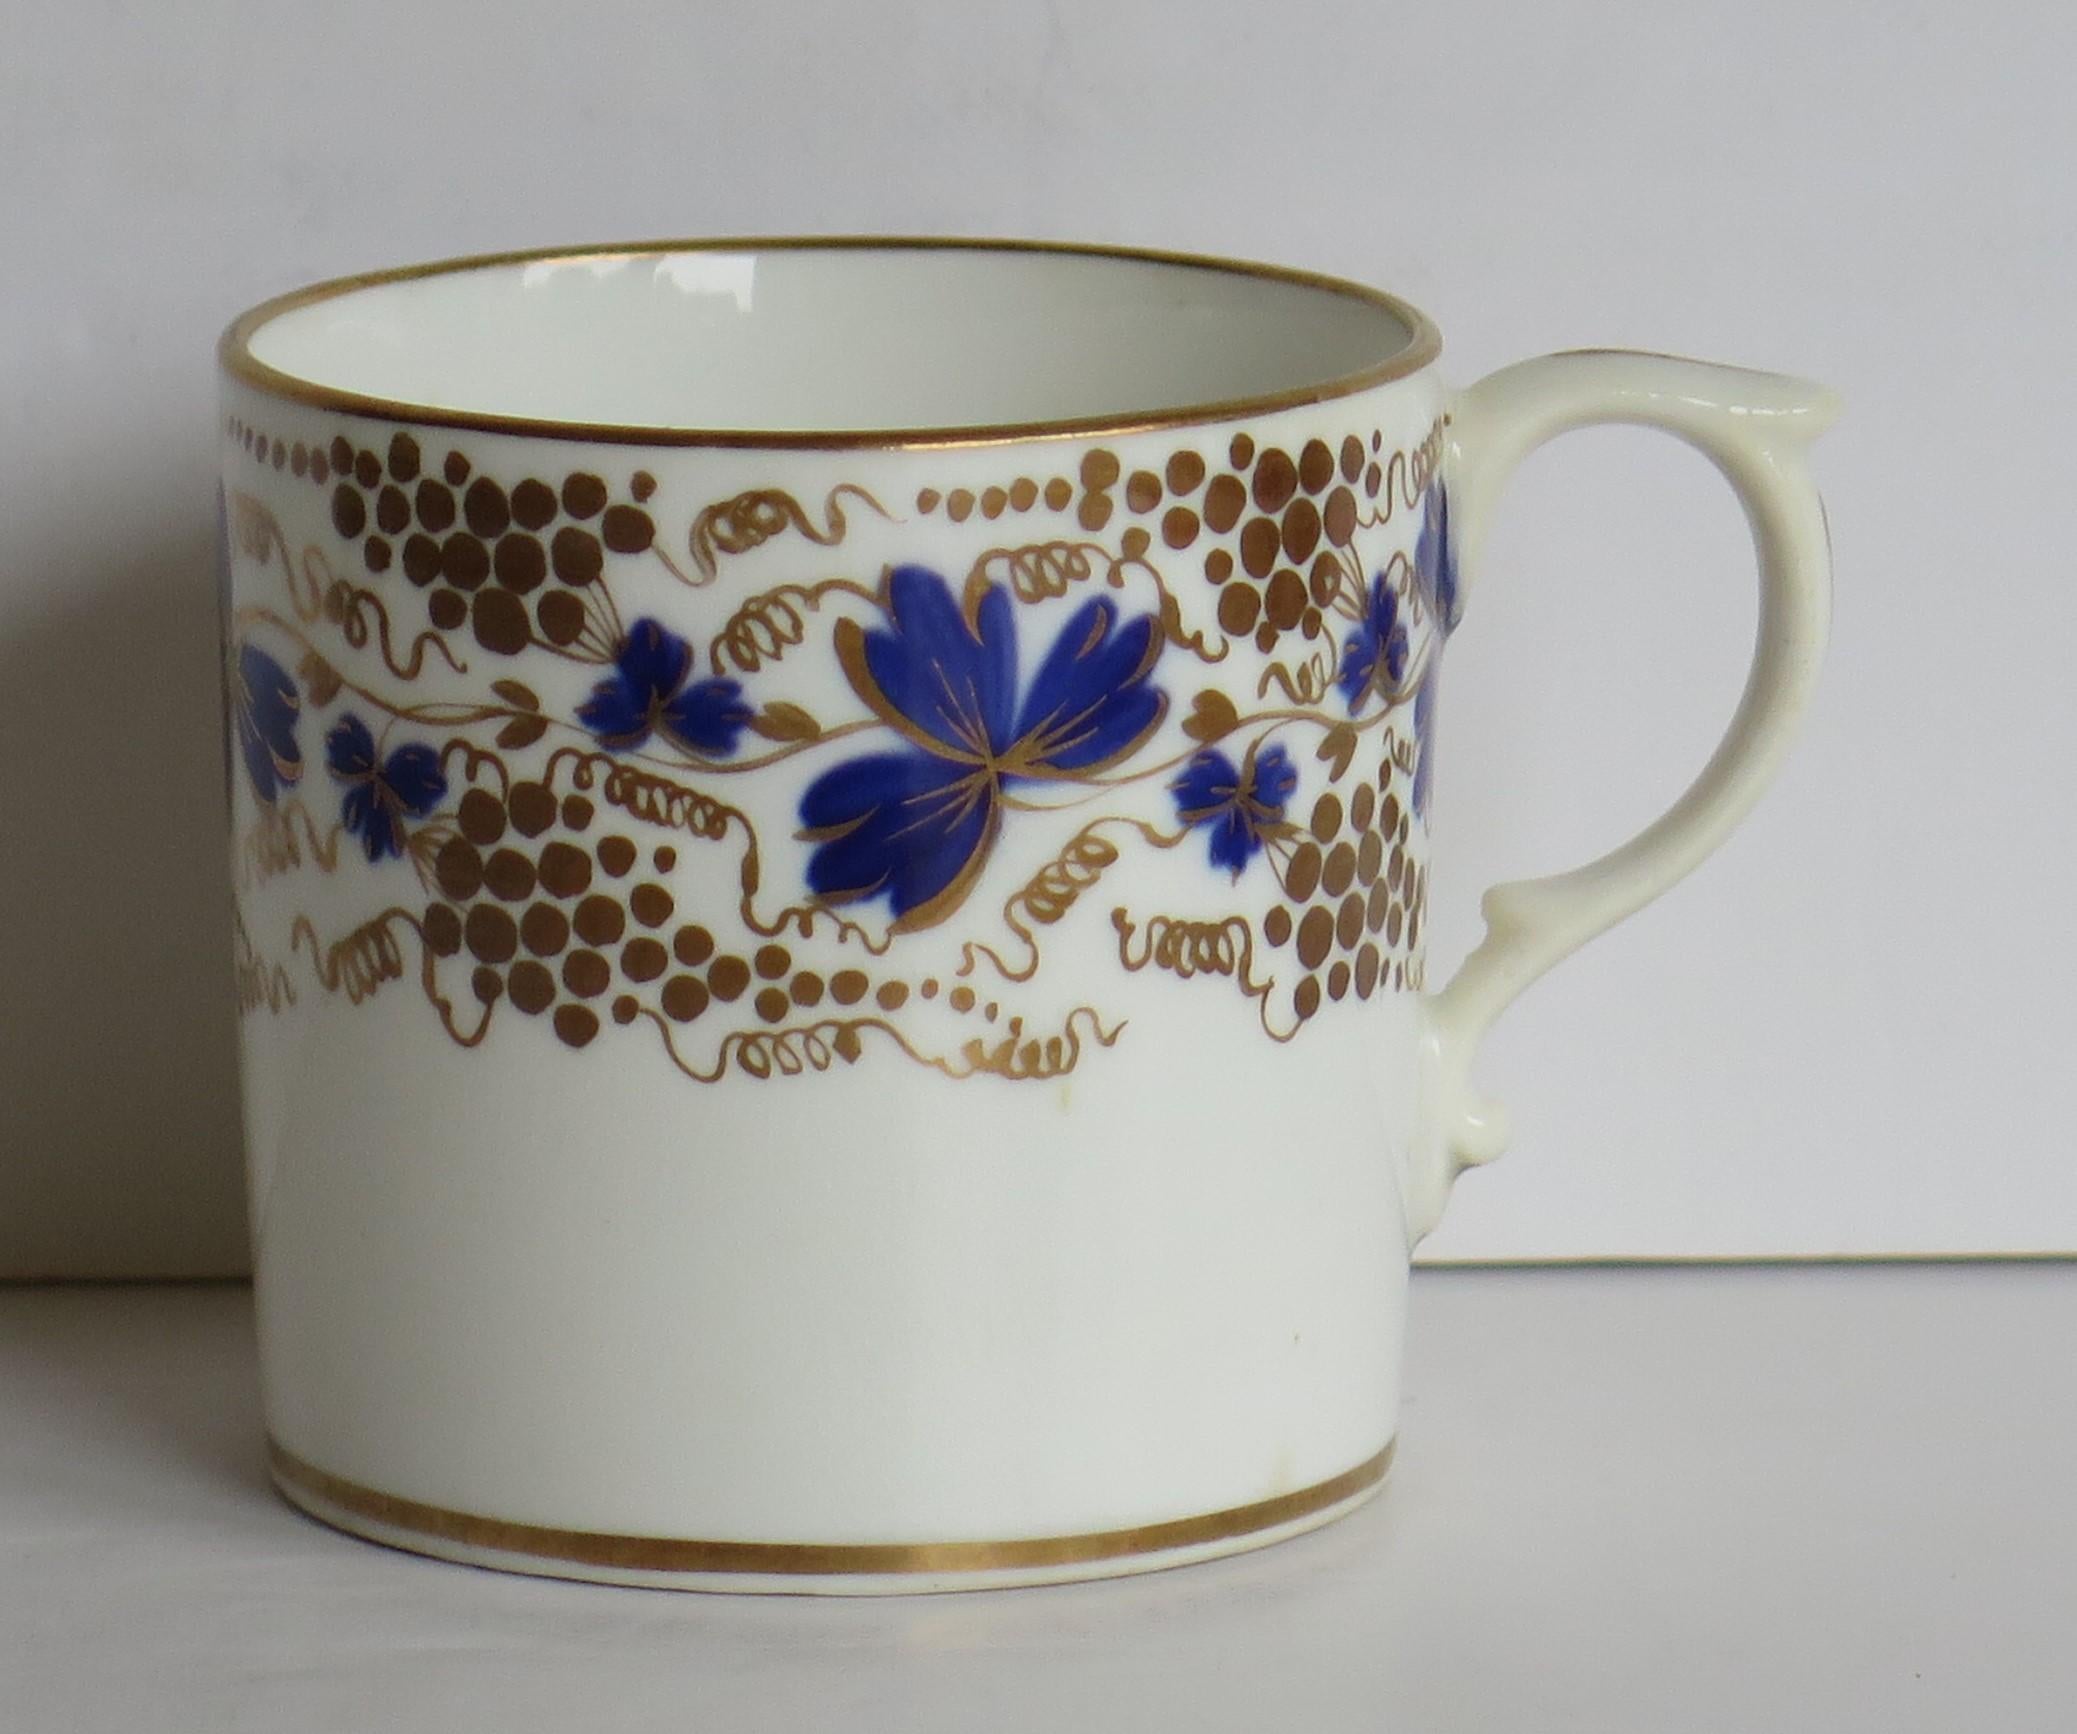 Dies ist eine fein handbemalte Porzellan-Kaffeekanne aus der Derby-Fabrik, England, aus der georgianischen Regency-Periode des 19. Jahrhunderts, um 1825
 
Kaffeekannen mit geradem Rand wurden ursprünglich nur in den ersten 25 Jahren des 19.